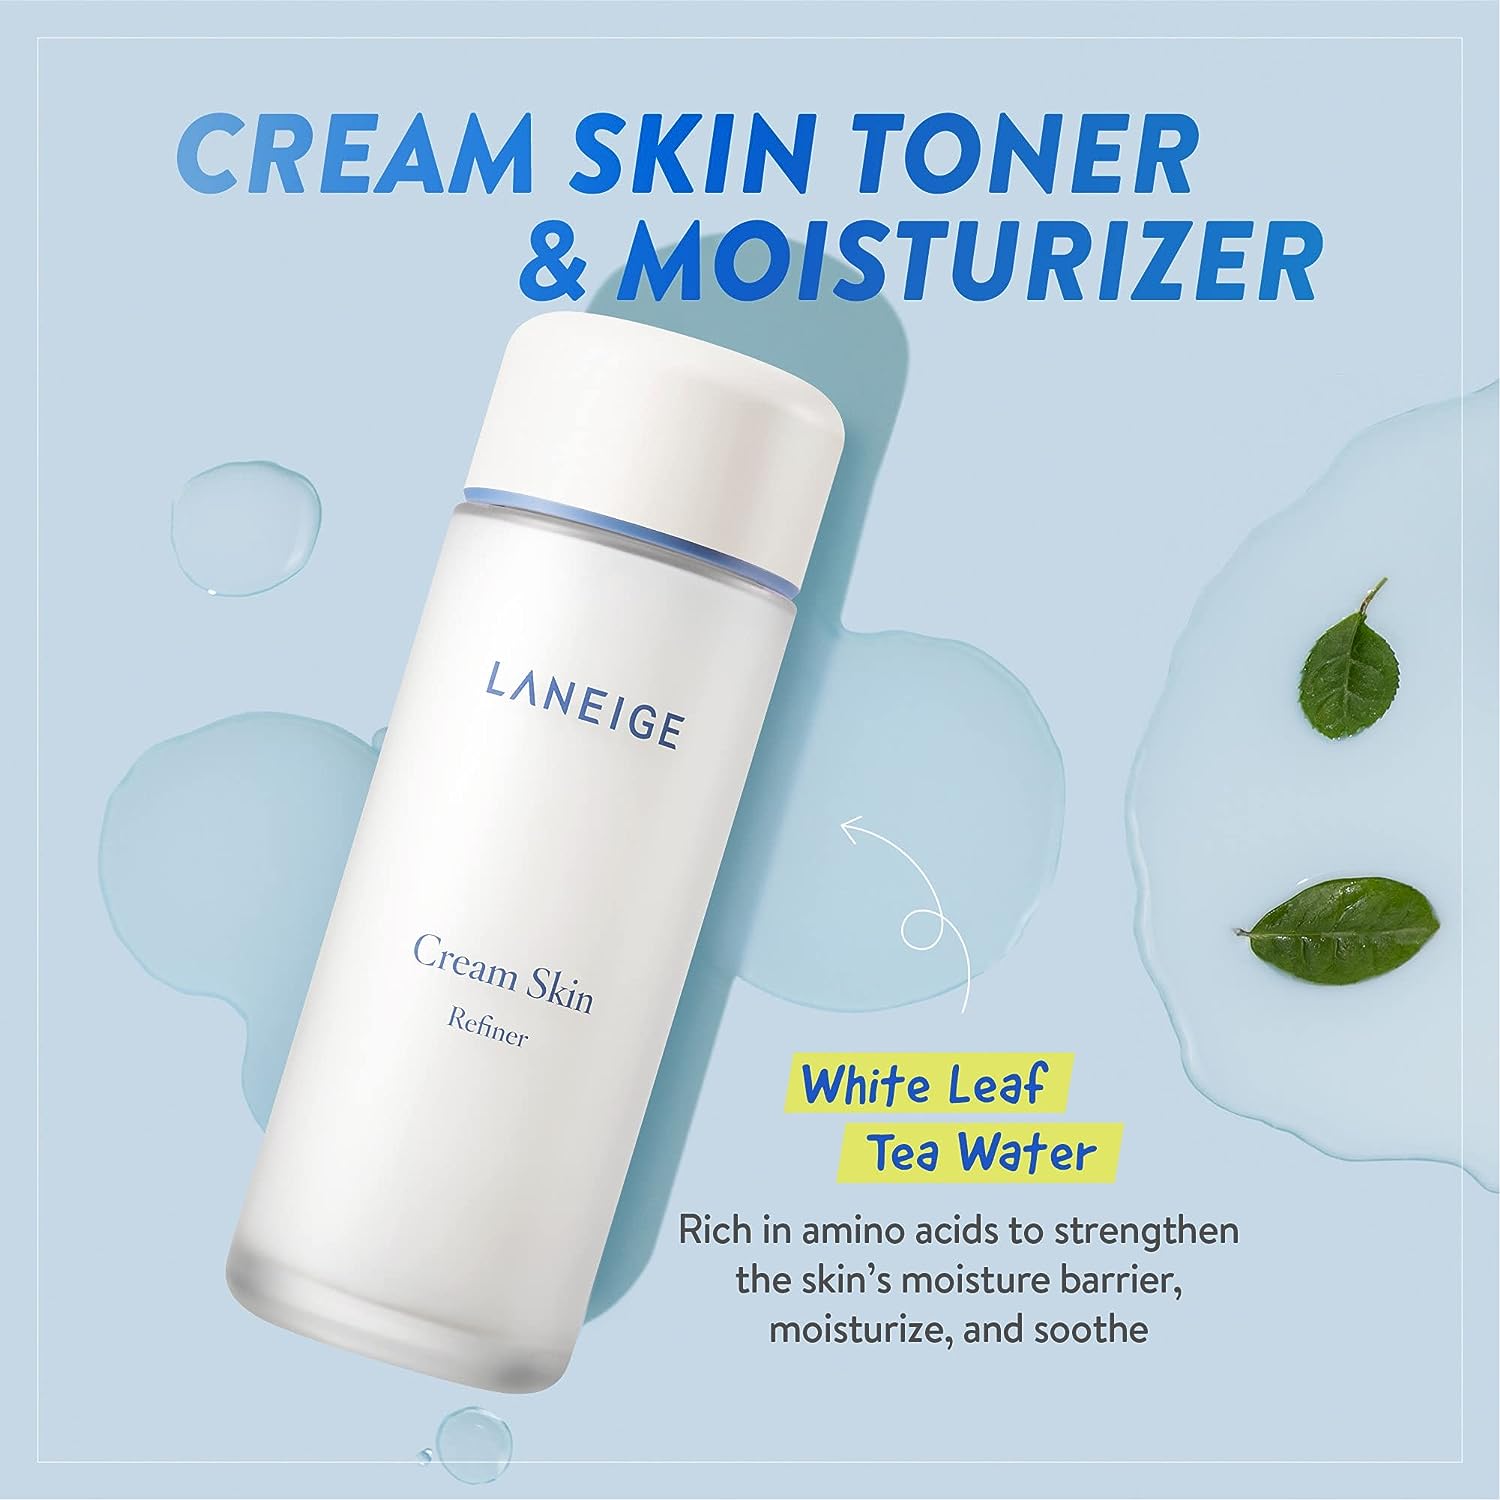 Laneige Cream Skin Refiner 150 ml